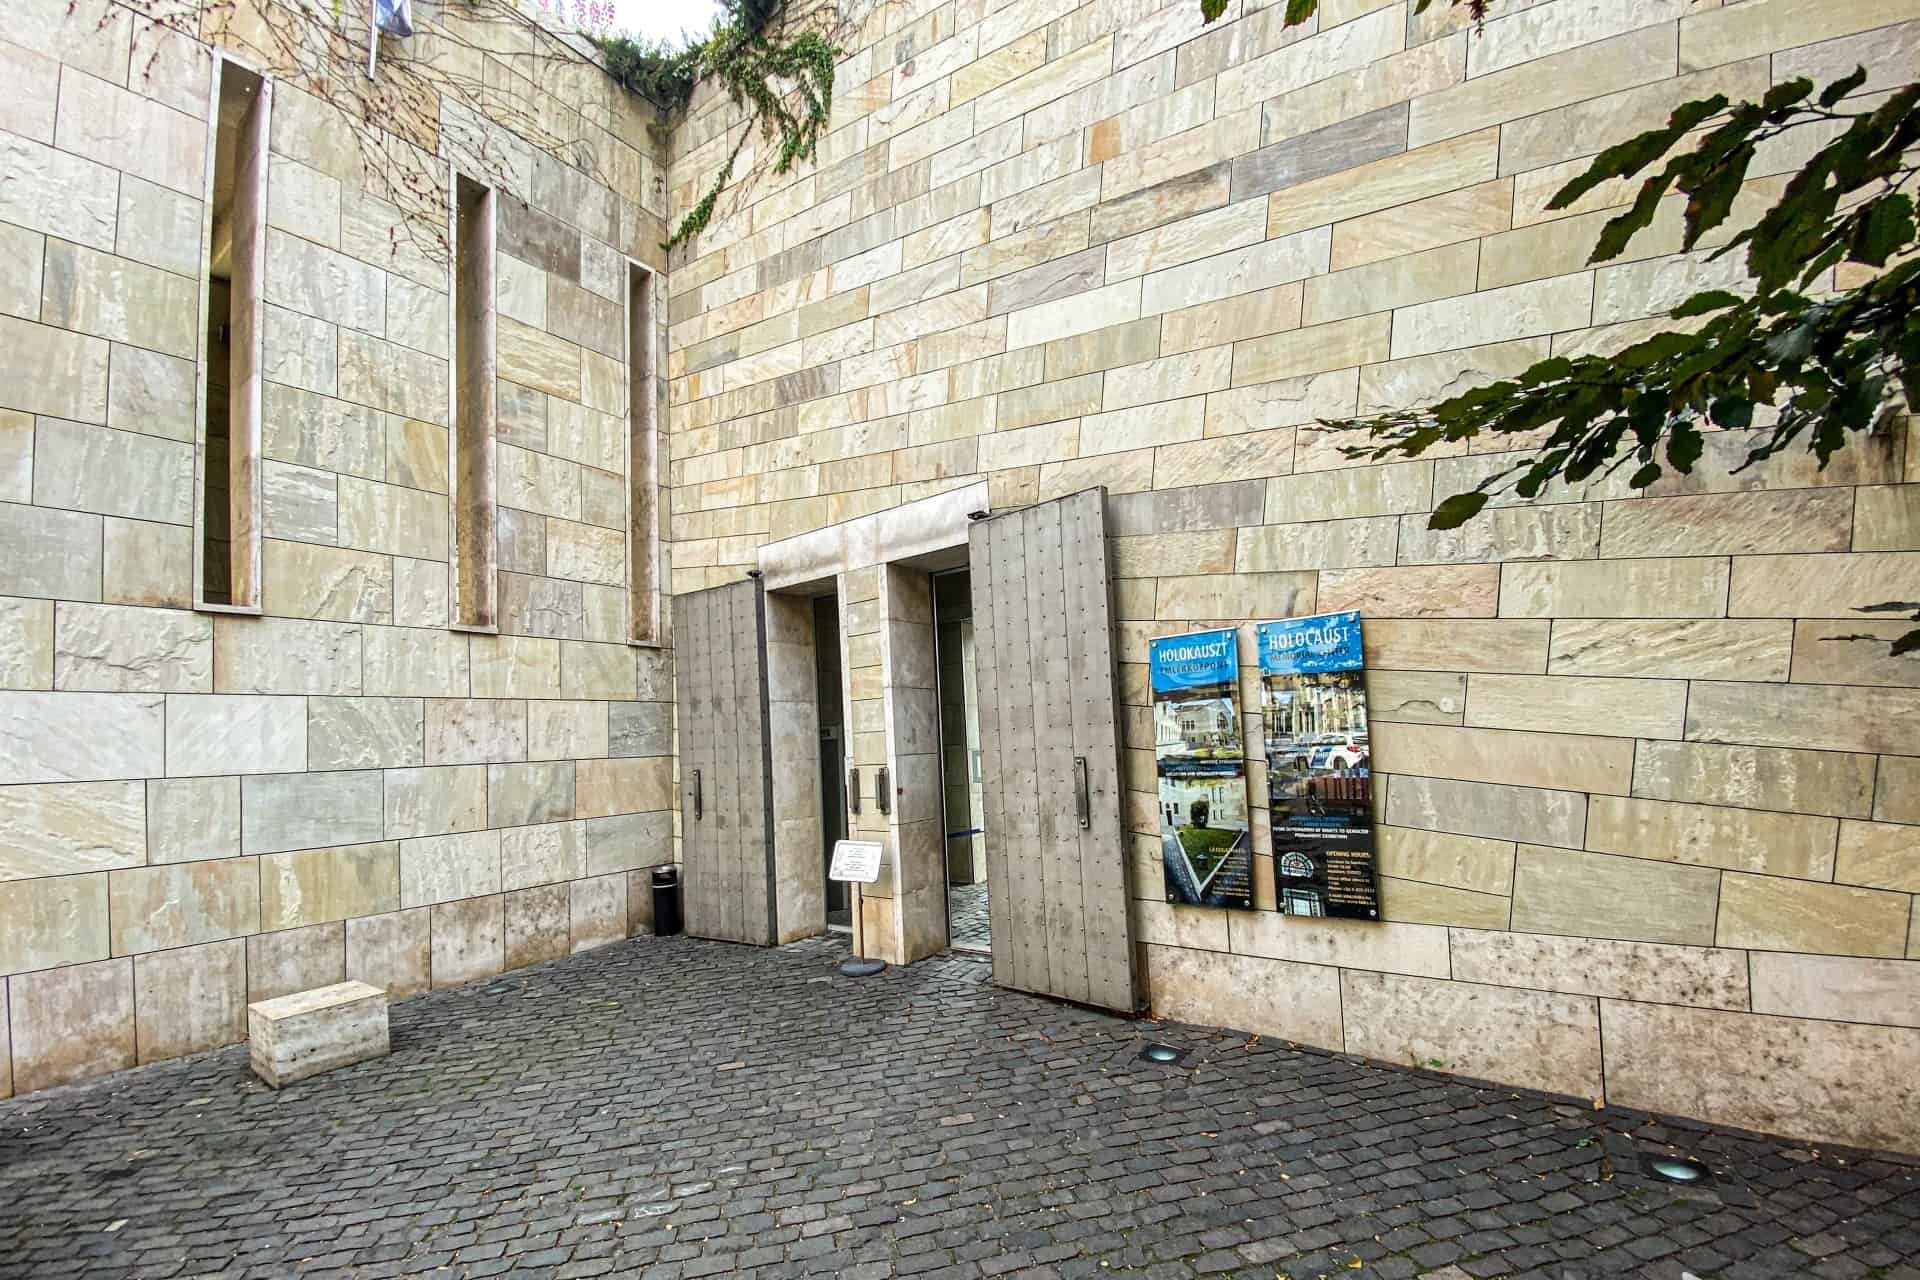 Entrance of the Holocaust Memorial Center